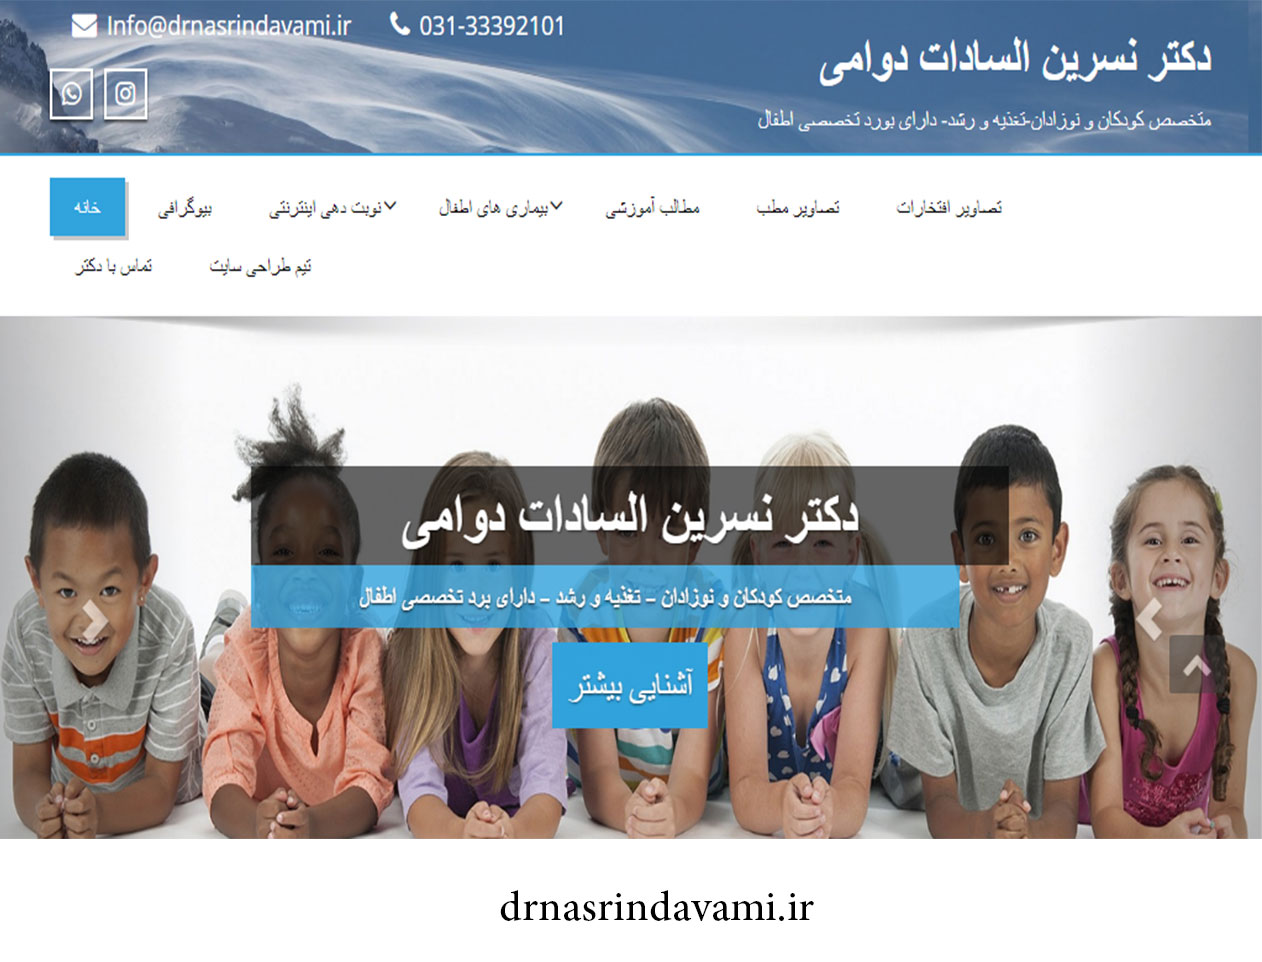 طراحی سایت متخصص کودکان و نوزادان دکتر نسرین السادات دوامی